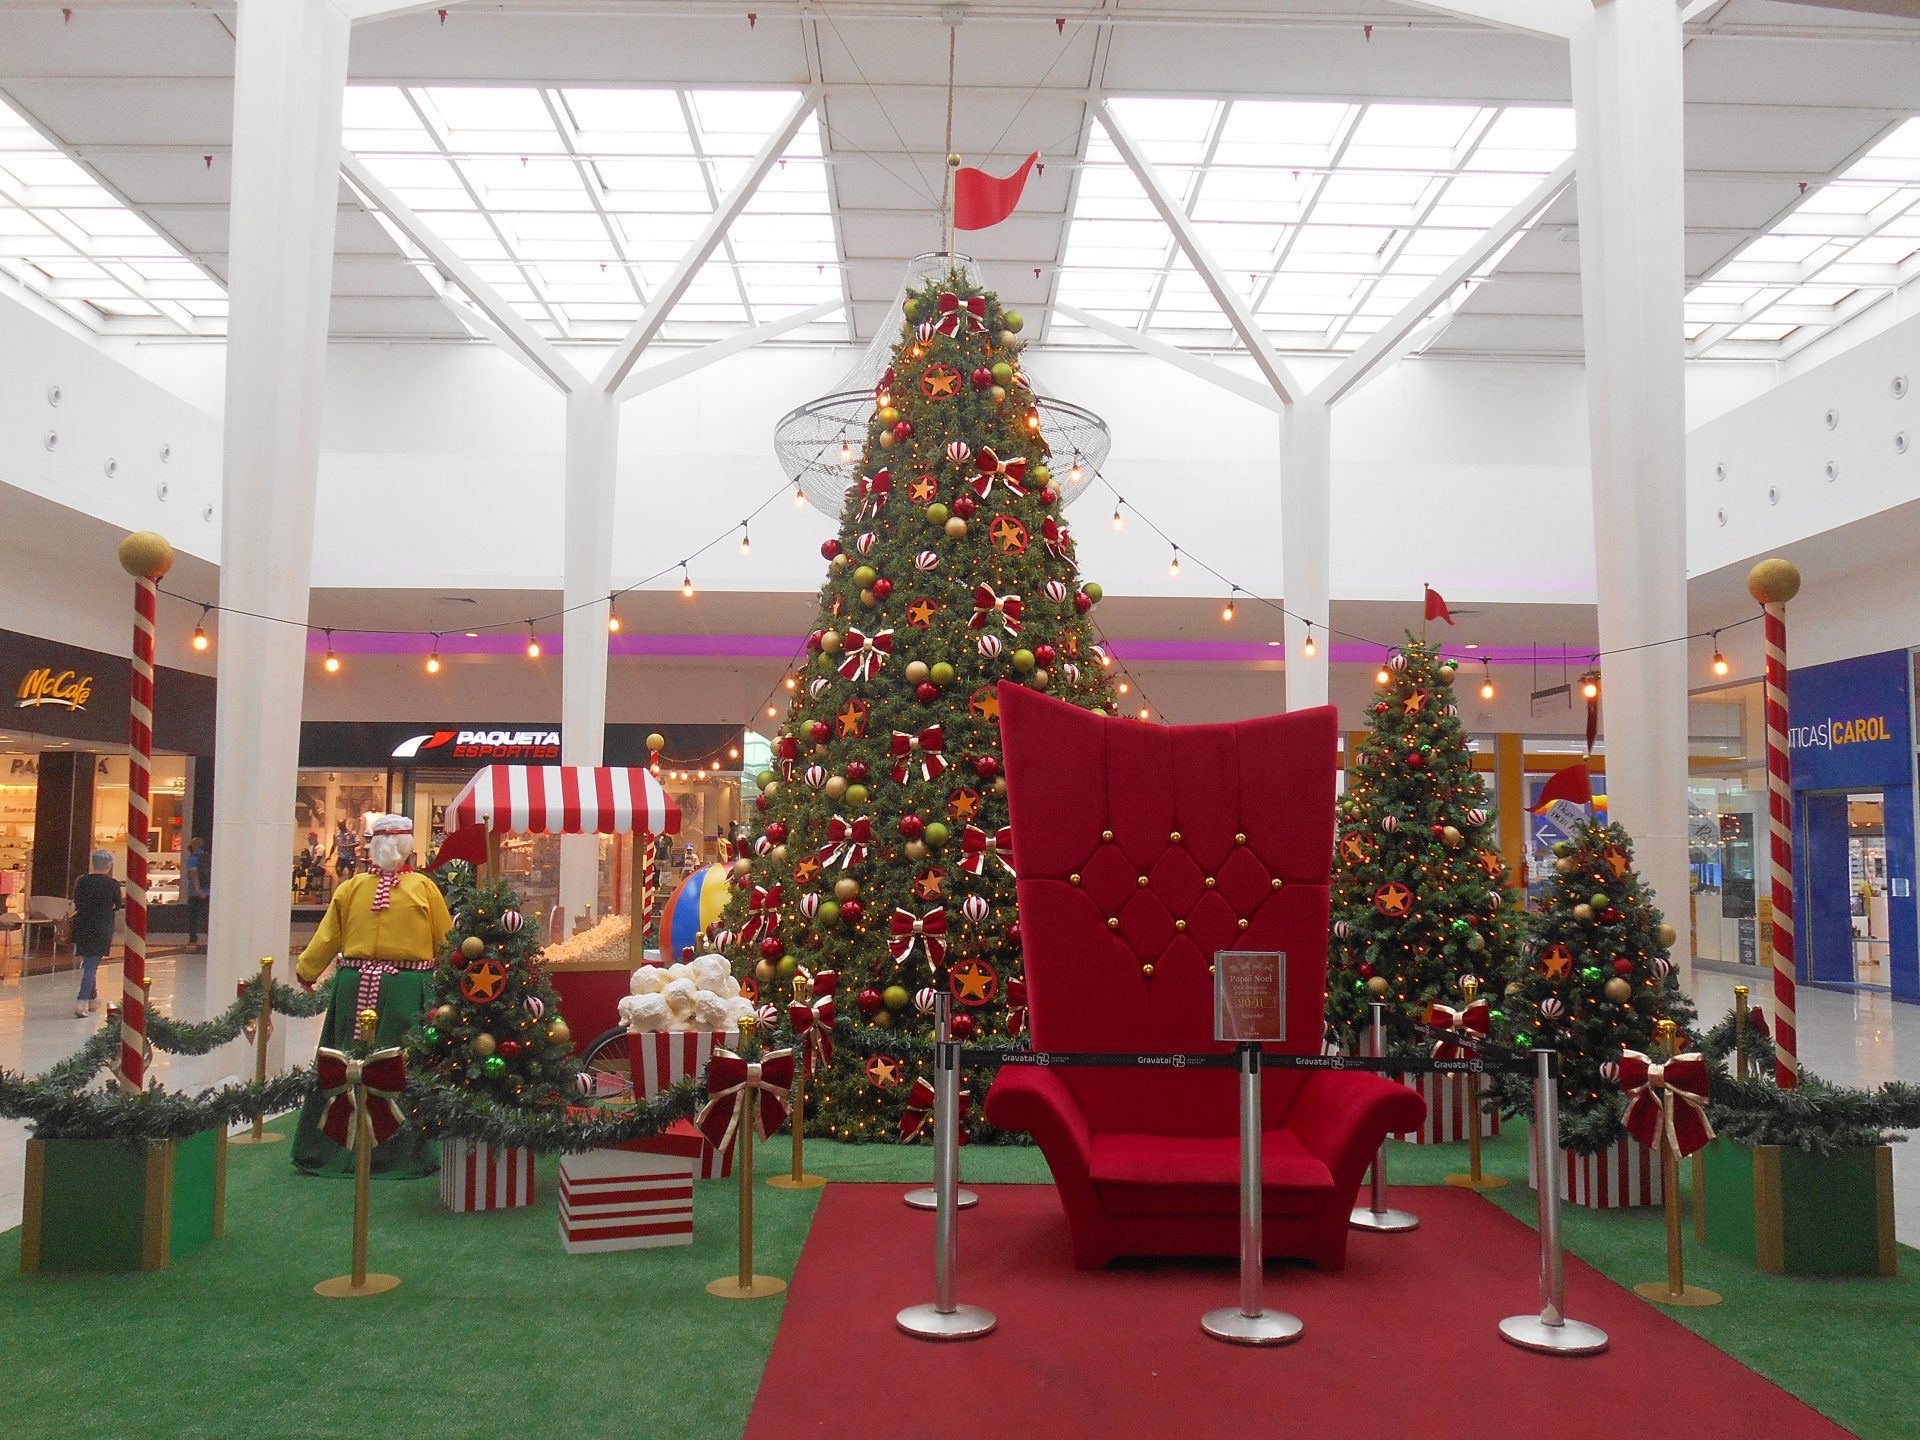 Parada de Natal receberá Papai Noel no Gravataí Shopping amanhã